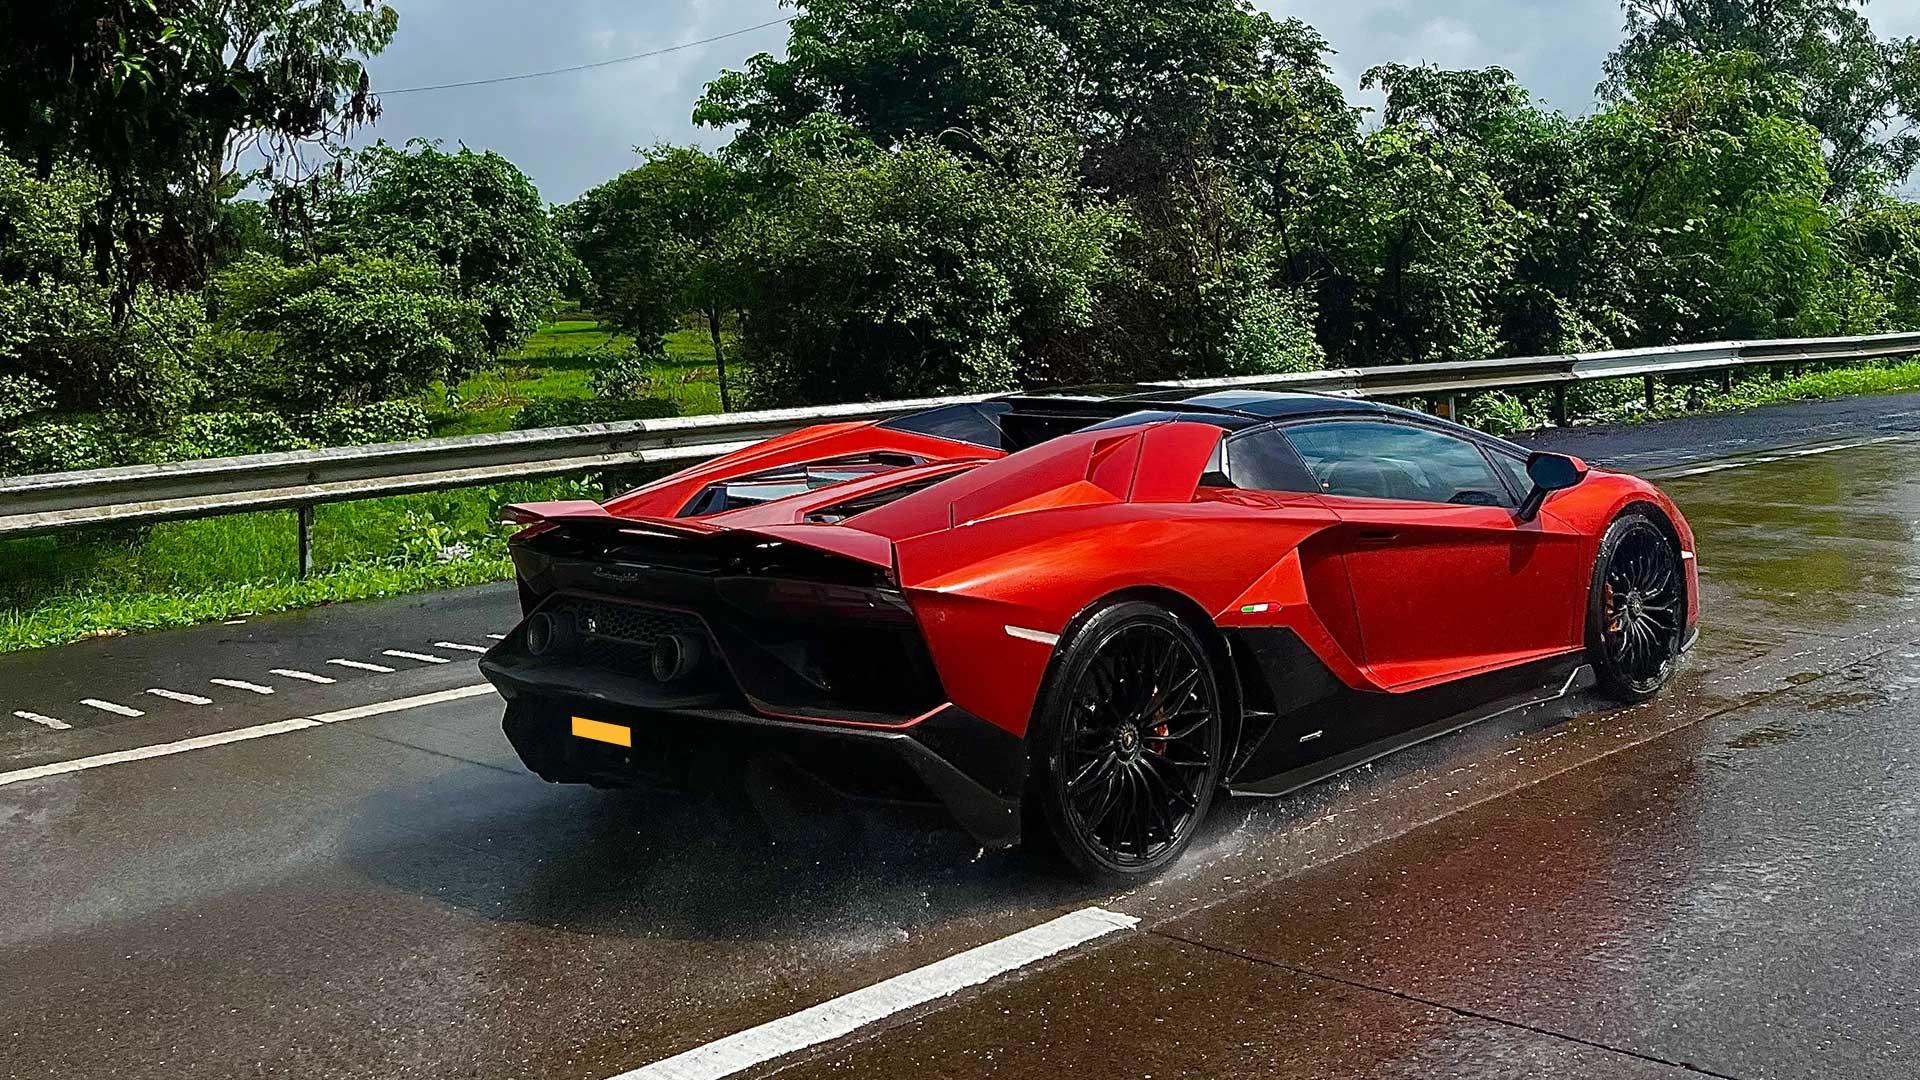 Lamborghini Aventador snelweg Waterschade - overstroming - regen -overlast